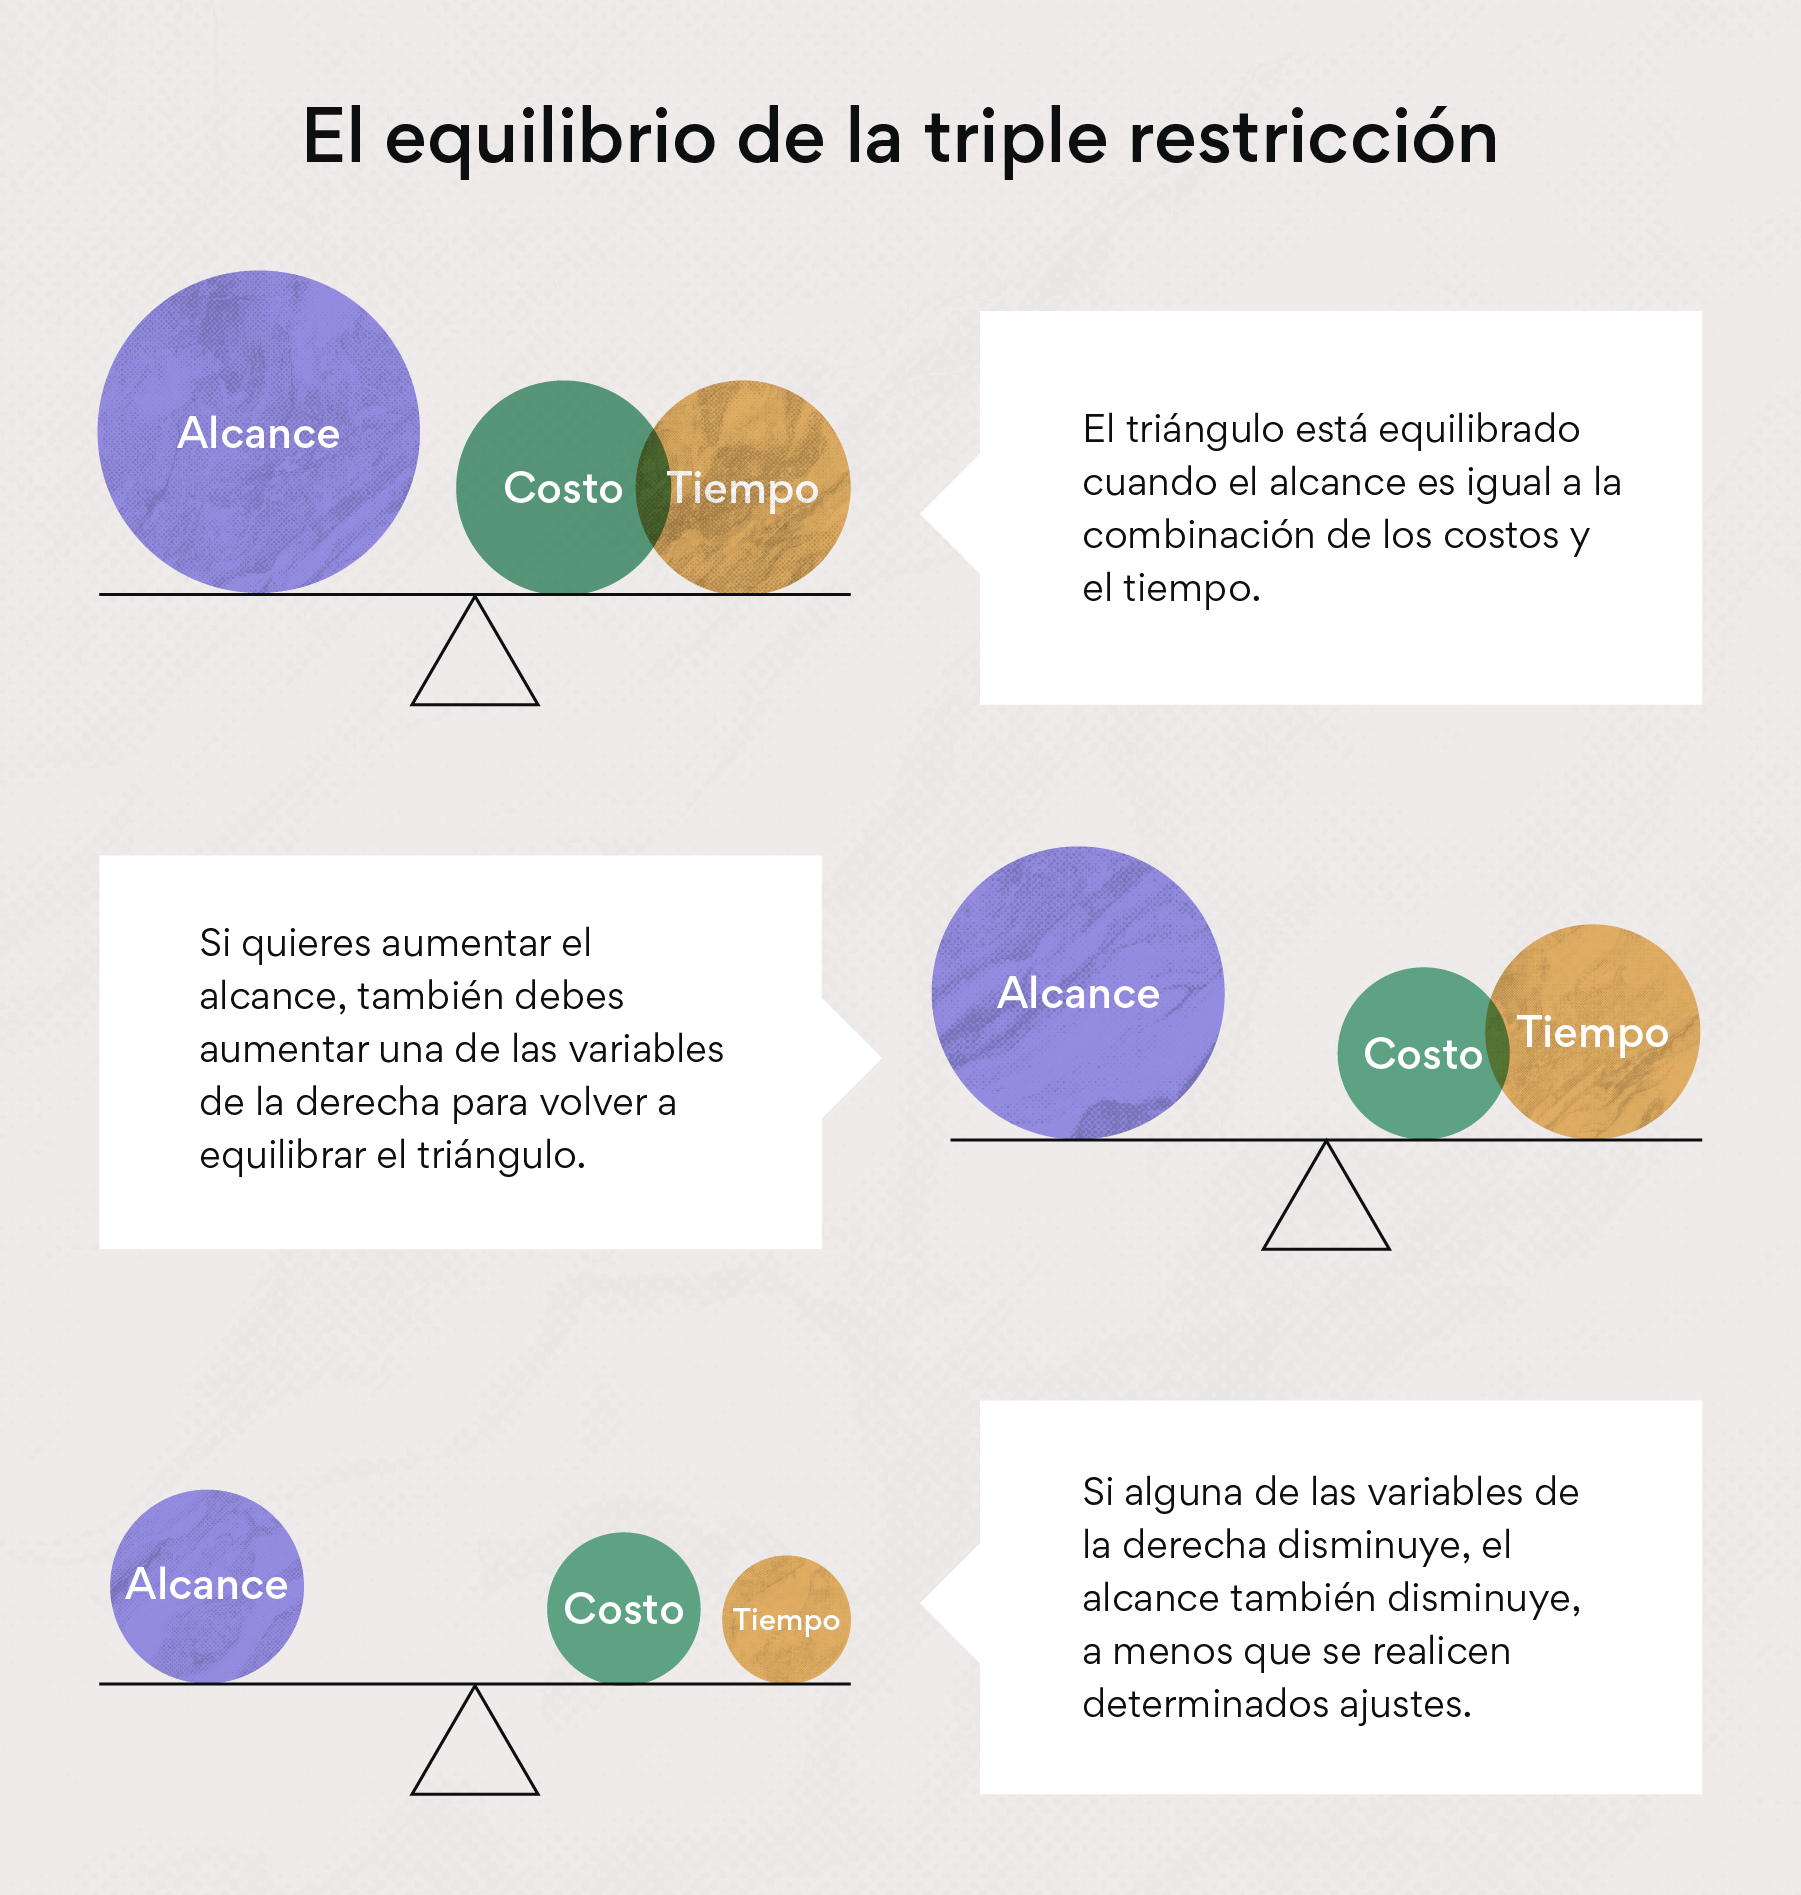 El equilibrio de la triple restricción